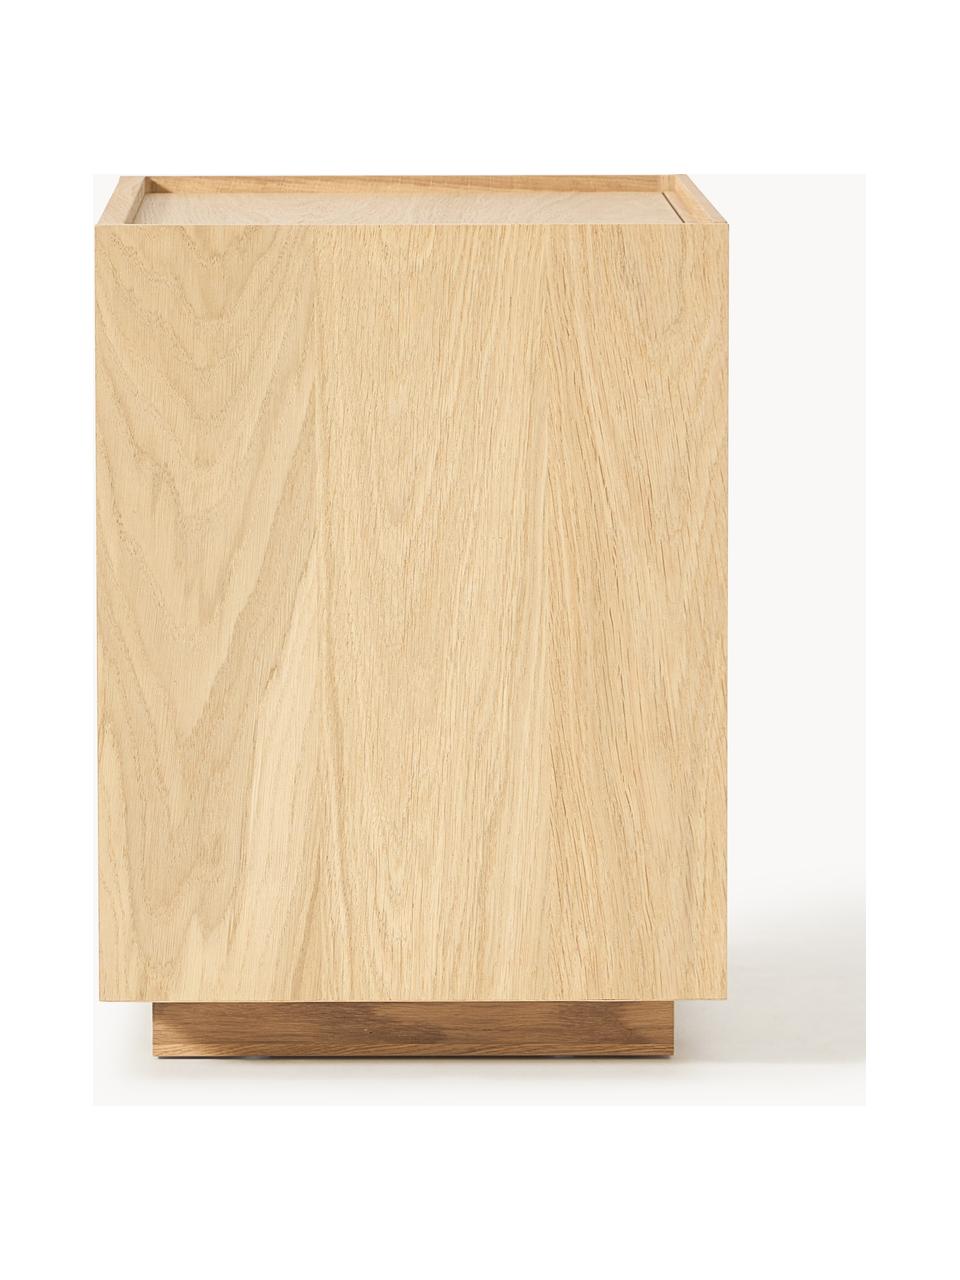 Holz-Nachttisch Larsen, Beine: Massives Eichenholz Diese, Eichenholz, lackiert, B 50 x H 50 cm